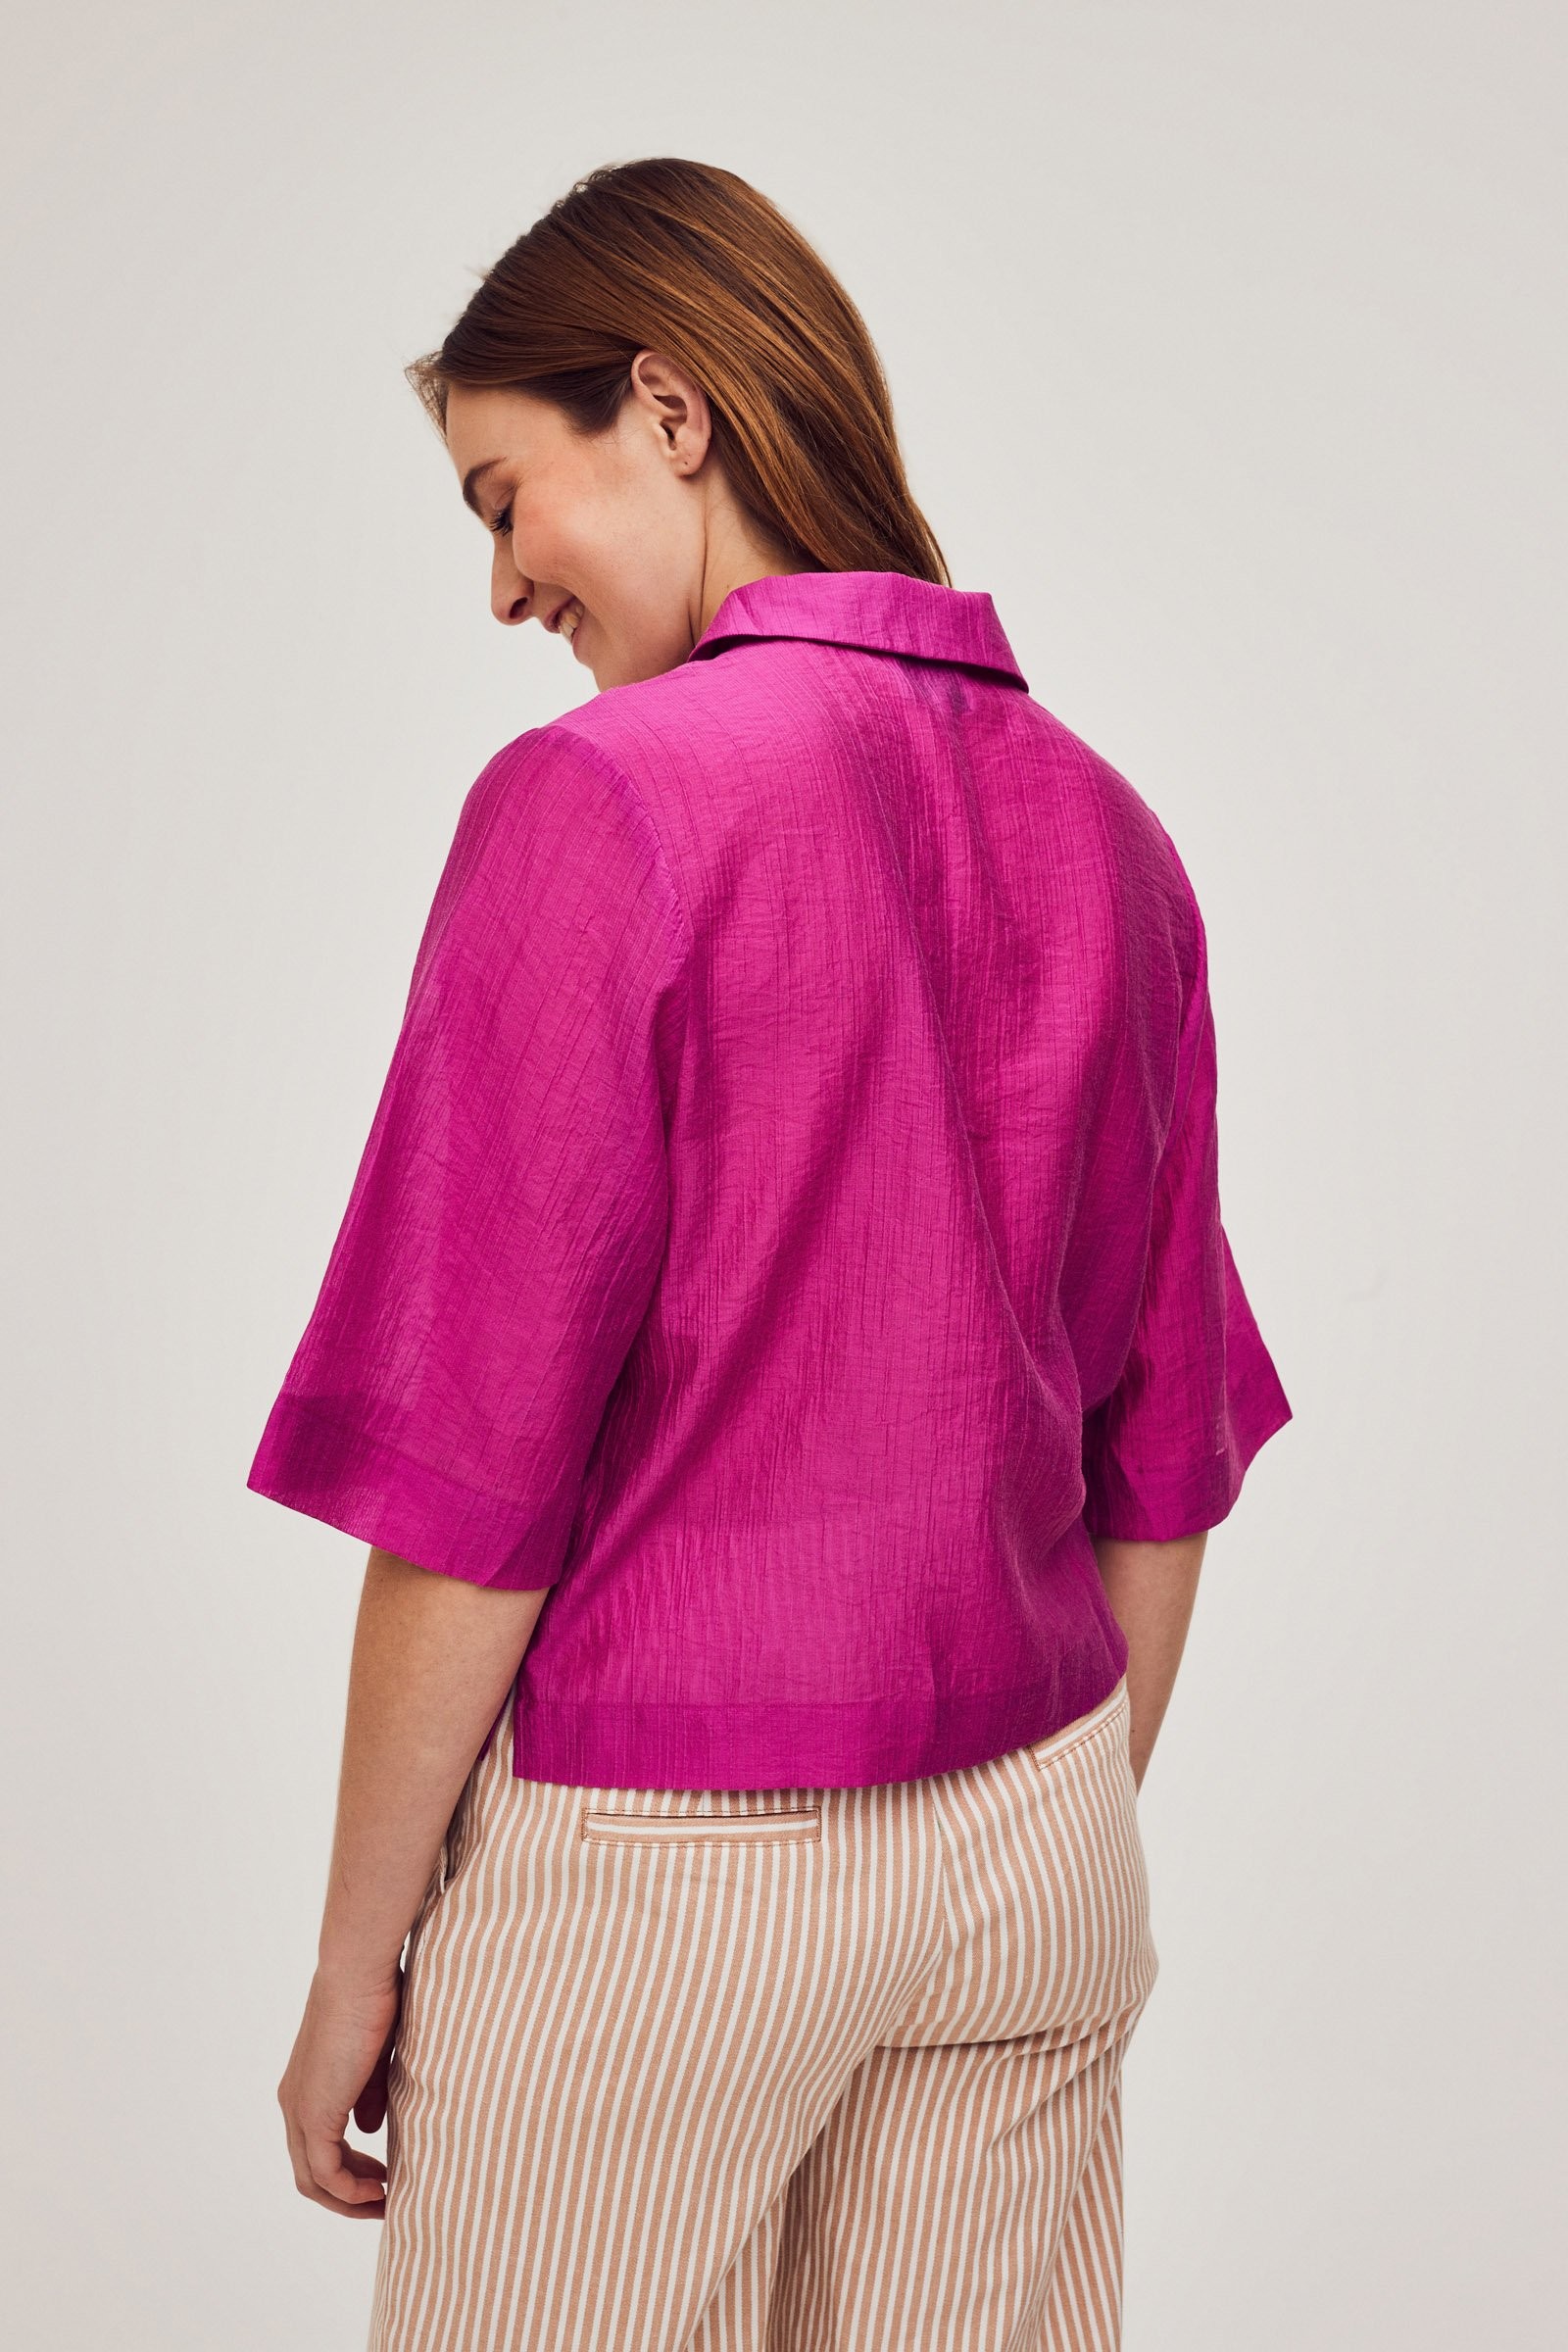 CKS Dames - SELIN - blouse korte mouwen - roze